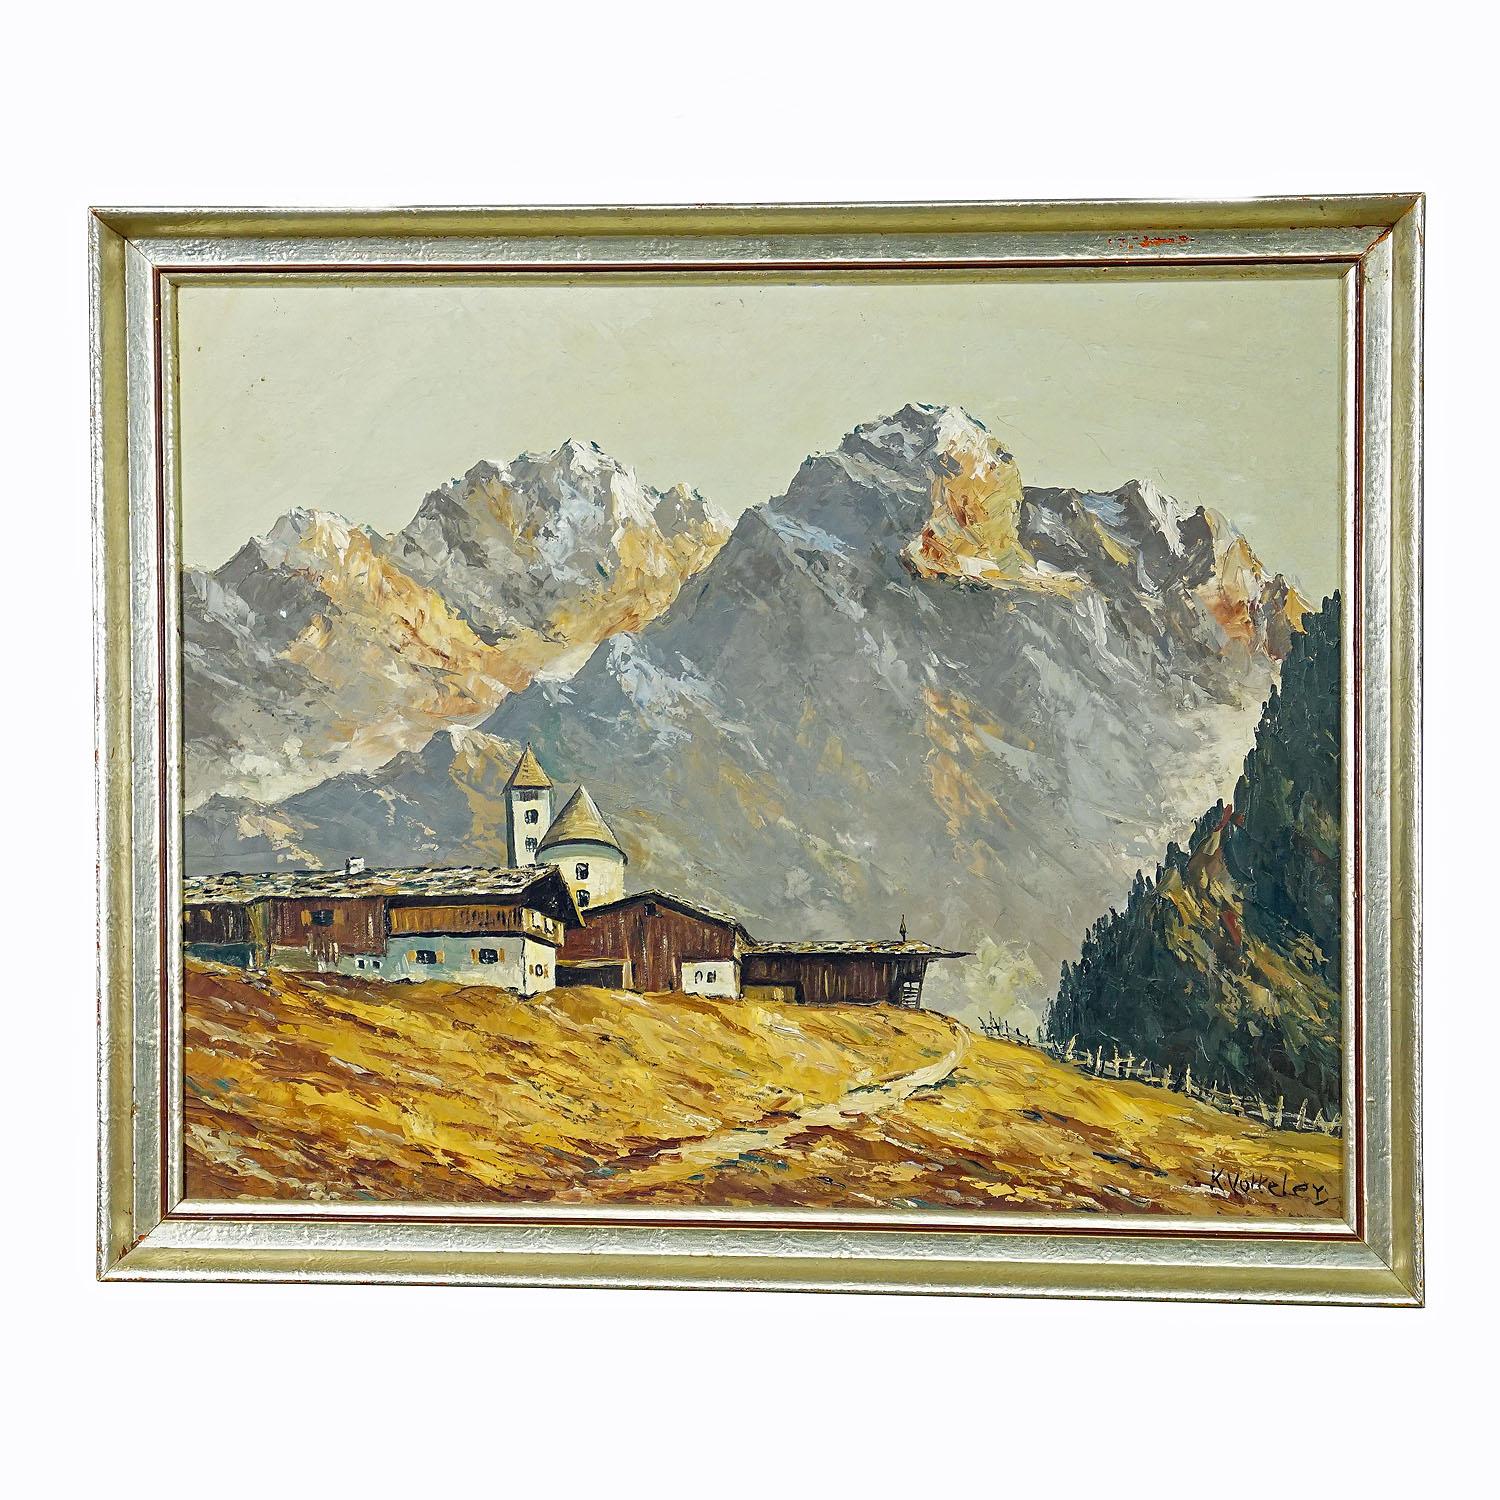 Peinture à l'huile de paysage alpin avec village de montagnes de Tyrolie

Une grande peinture à l'huile vintage représentant un paysage alpin avec un village de montagne tyrolien. Peint sur carton avec des couleurs pastel. Encadré avec un cadre doré